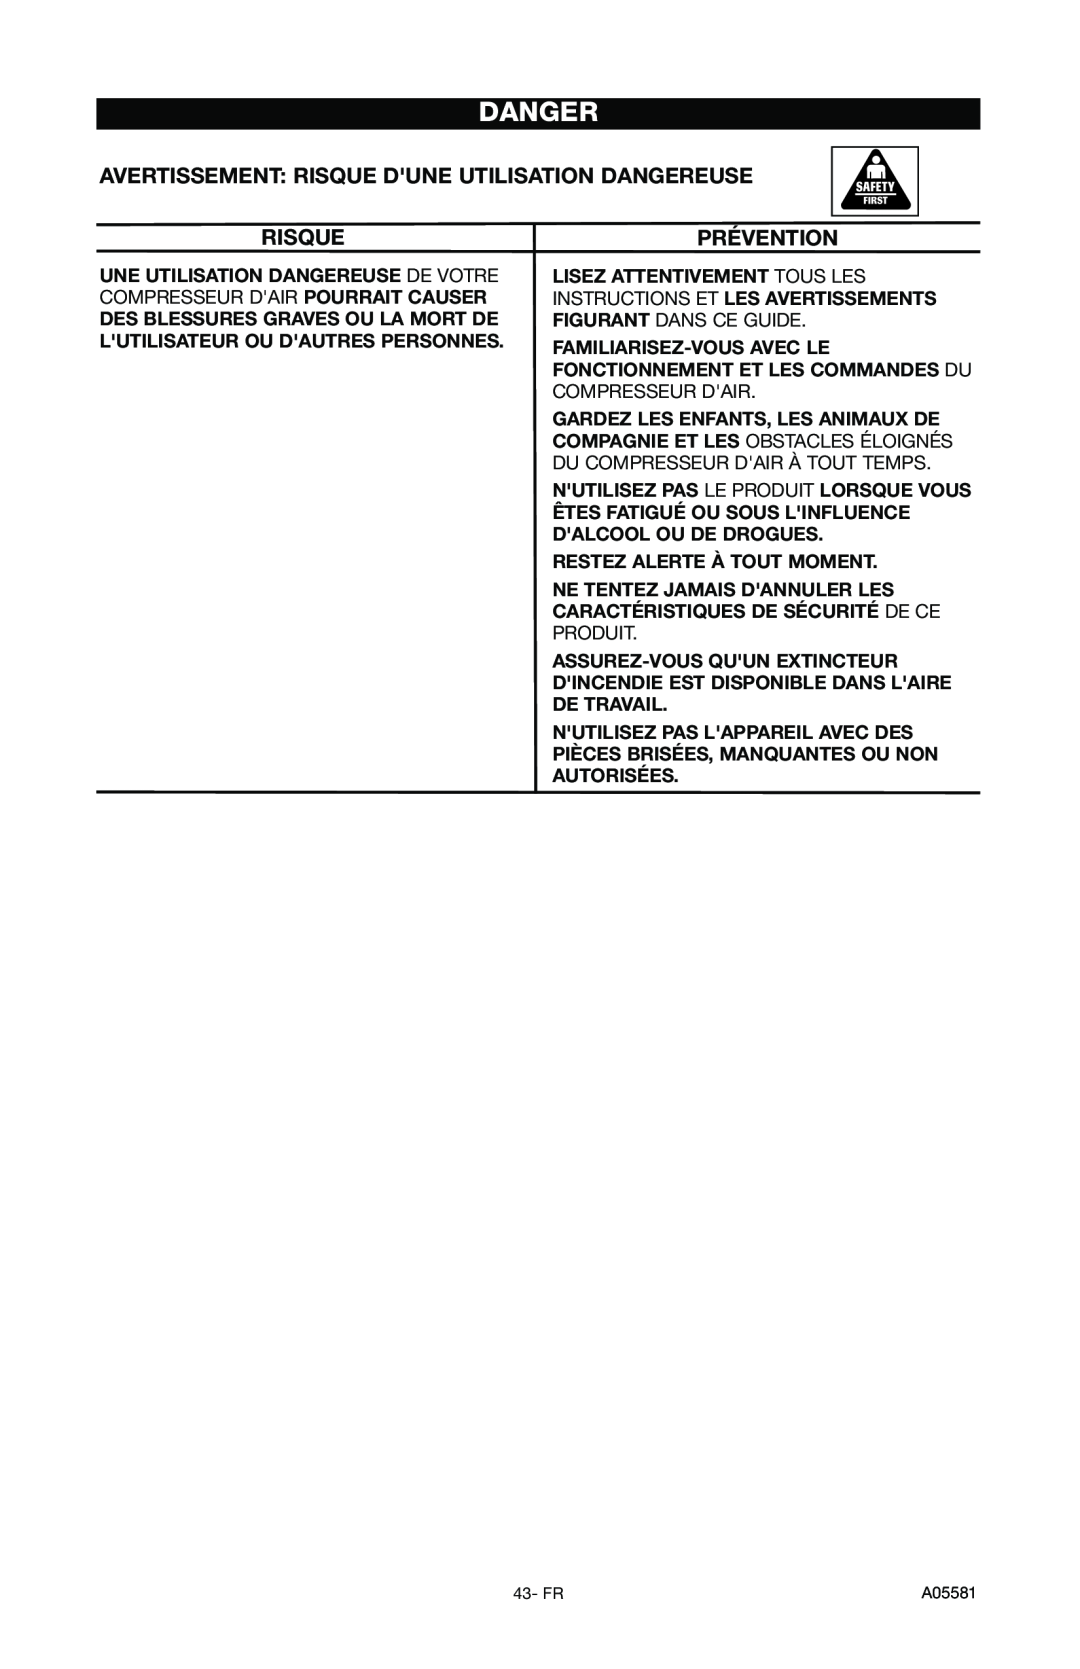 Delta CP201, A05581 instruction manual Avertissement Risque Dune Utilisation Dangereuse, Prévention 